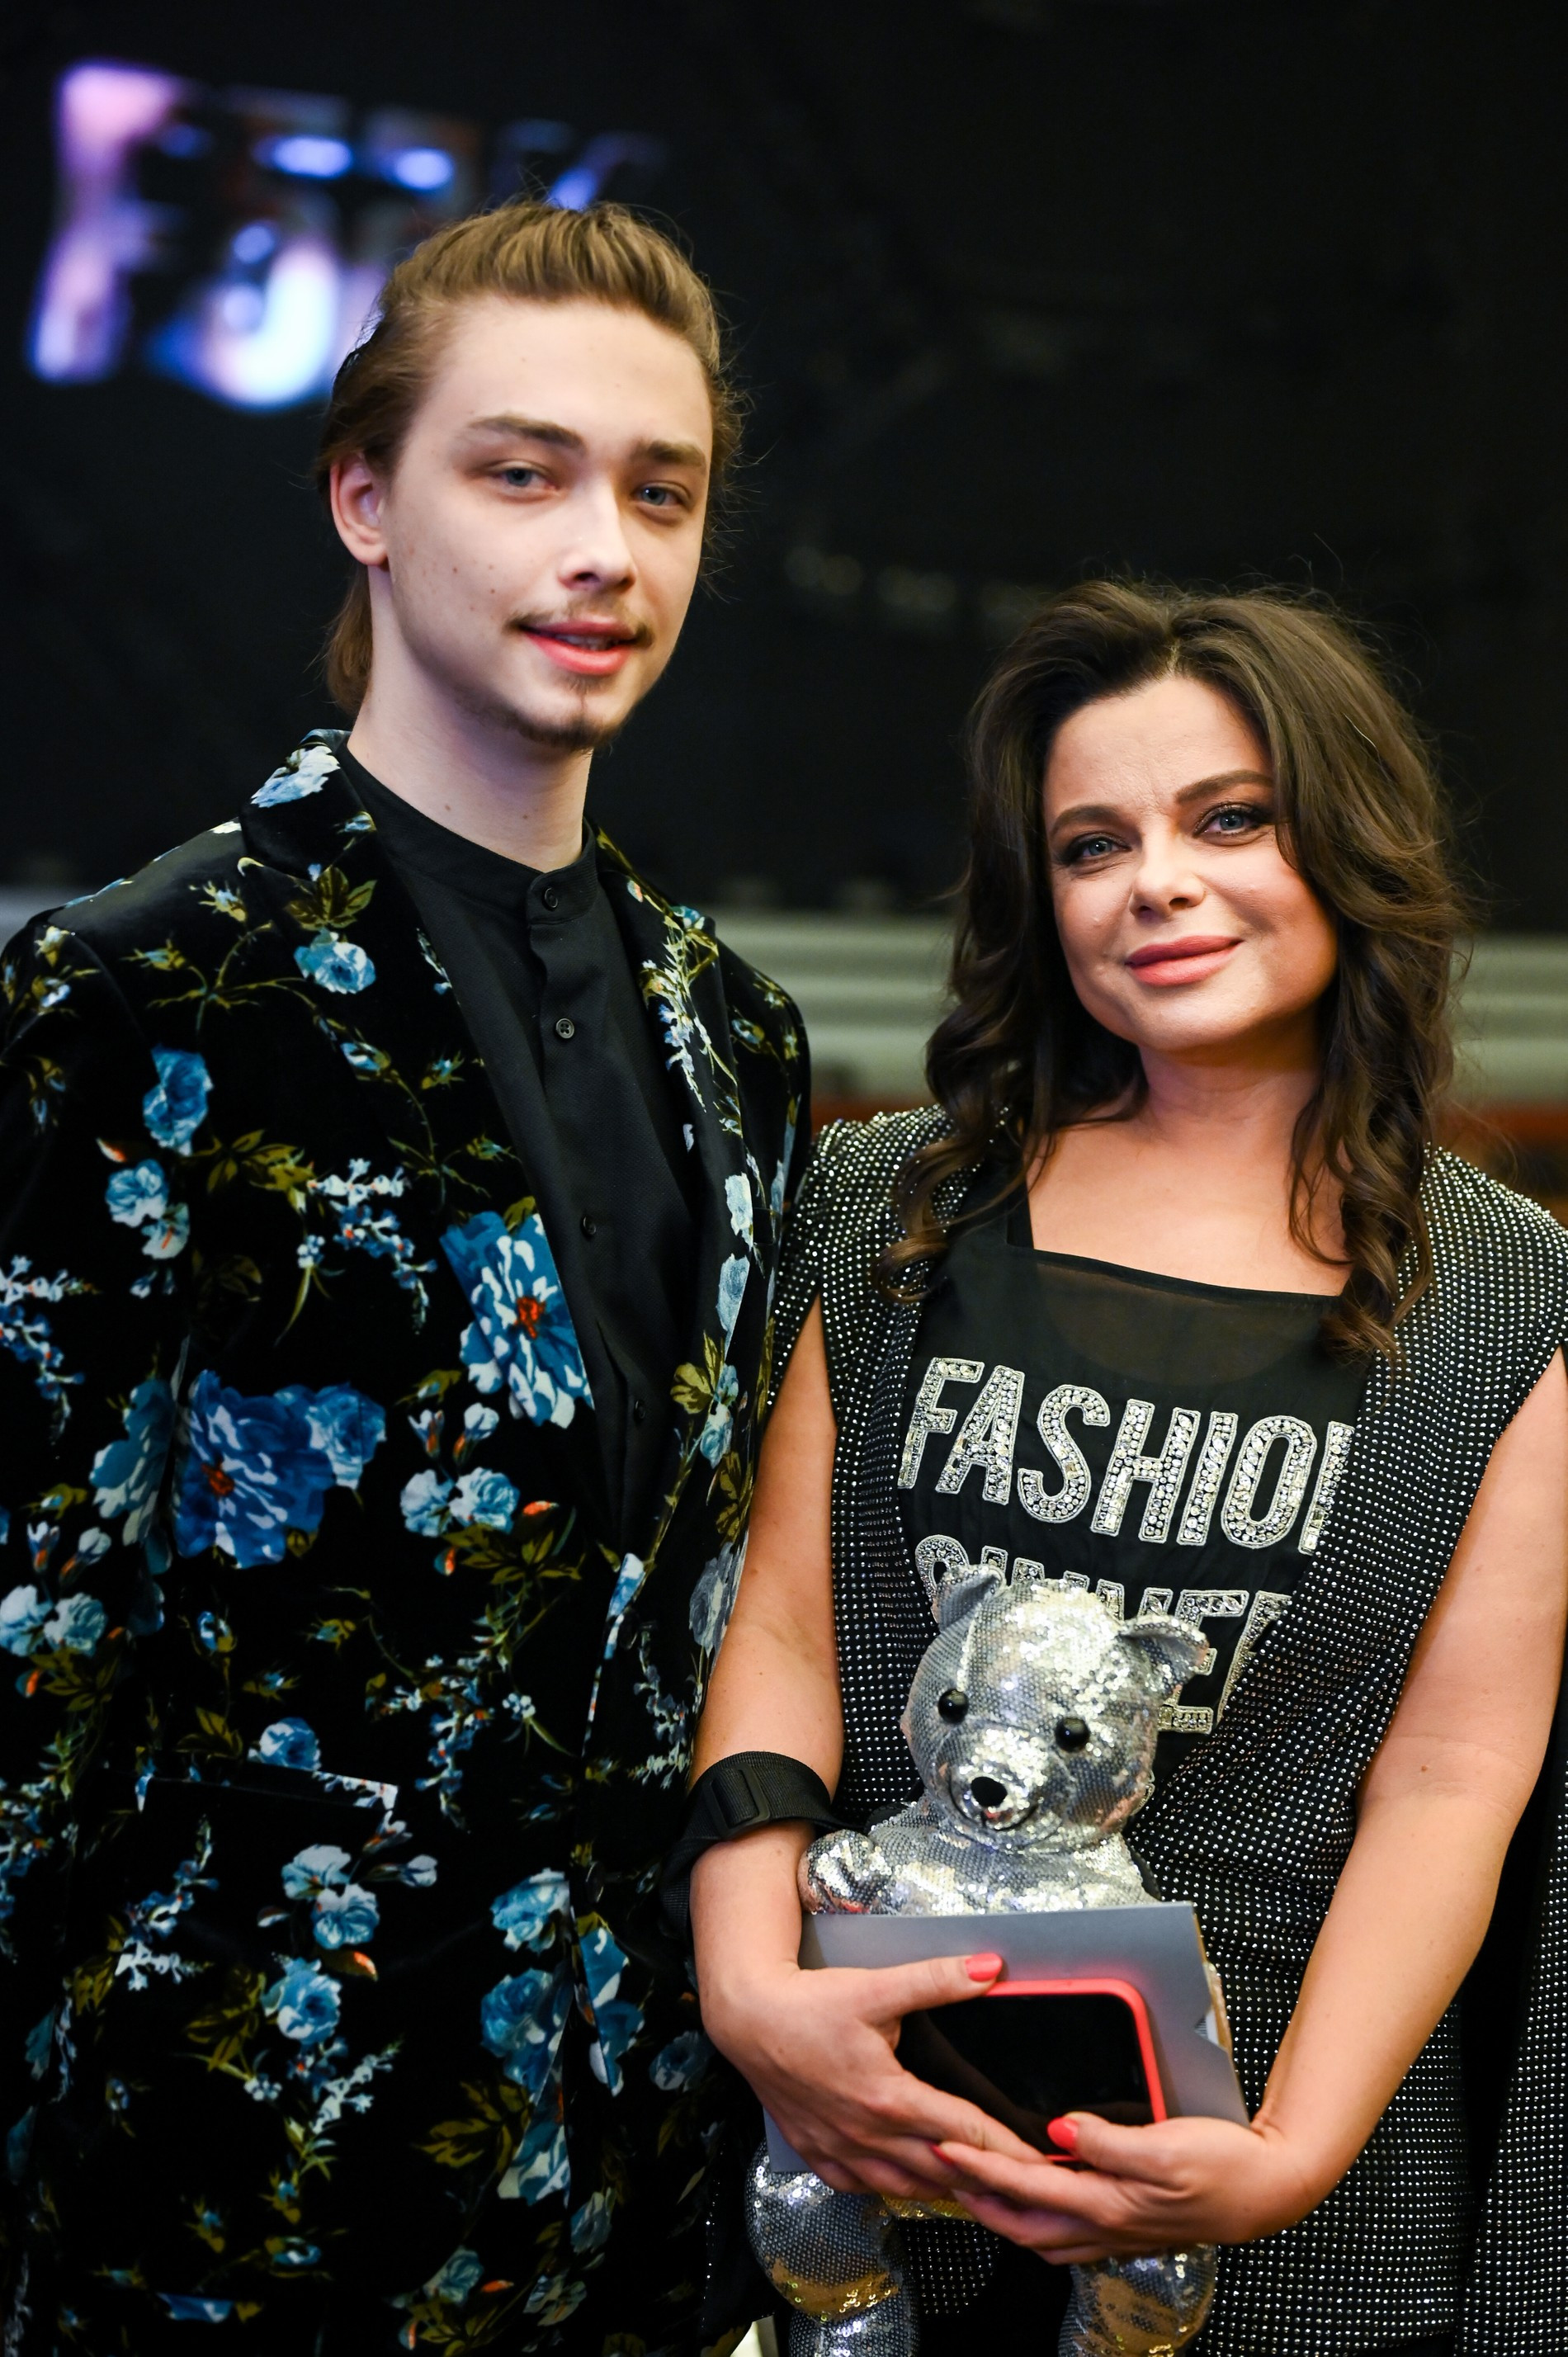 Наташа Королева с сыном на концерте в Кремле
Фото: Super.ru / Марченко Александра